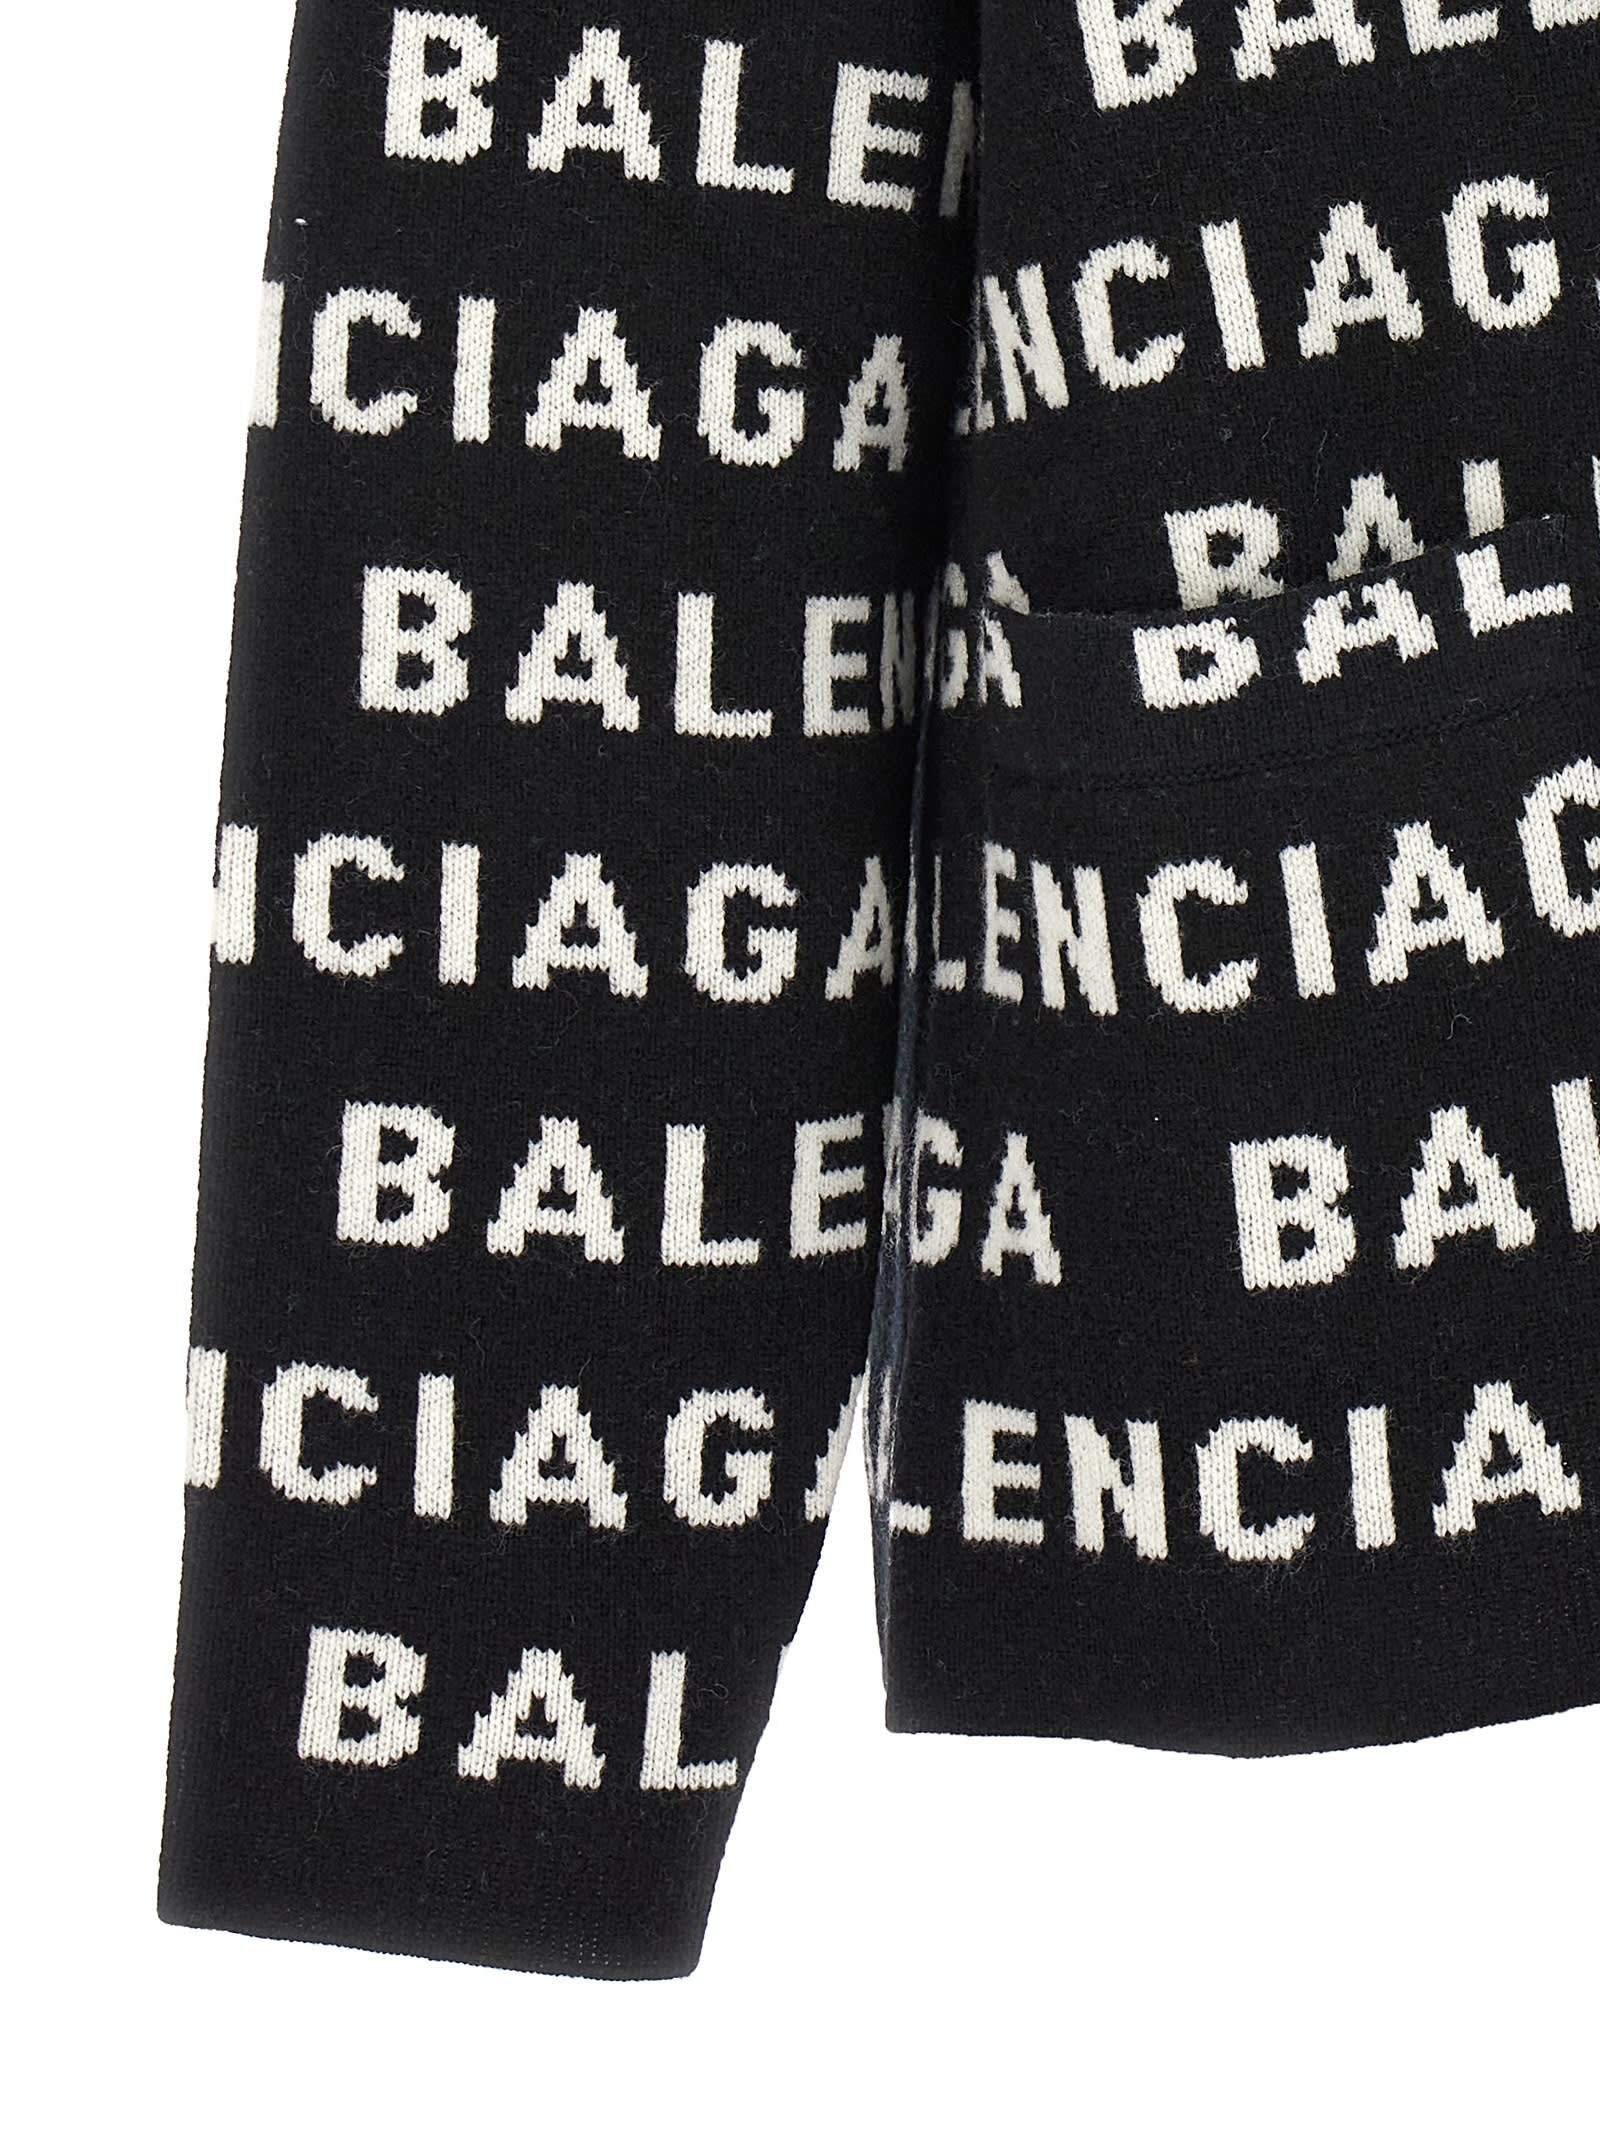 Shop Balenciaga All-over Logo Cardigan In White/black